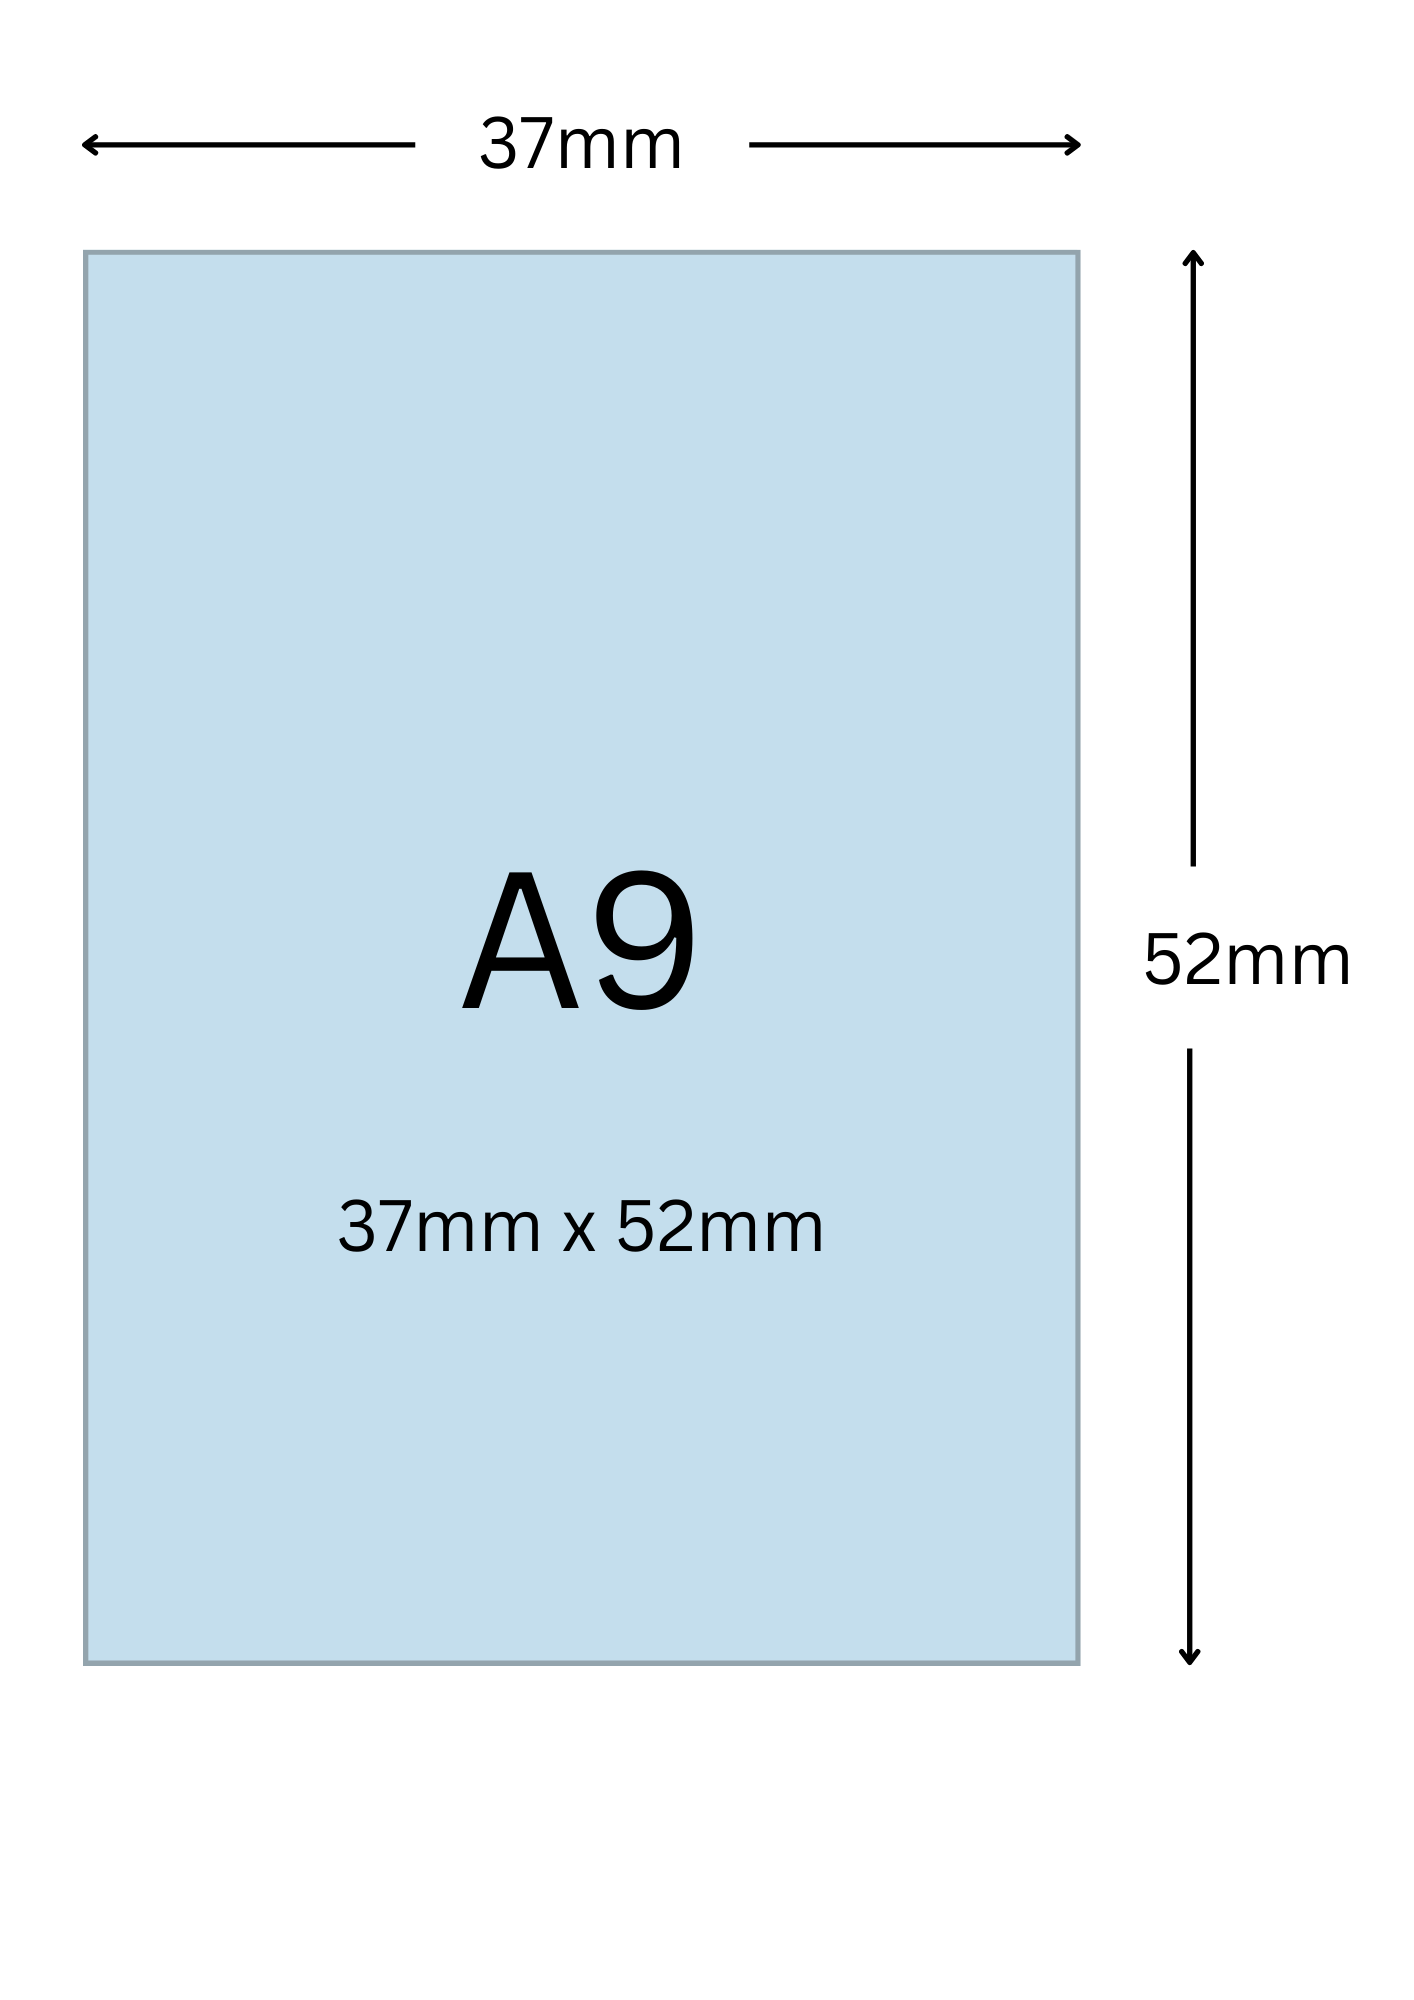 A9尺寸公分, A9紙張尺寸大小, A9紙張對應開數是幾開